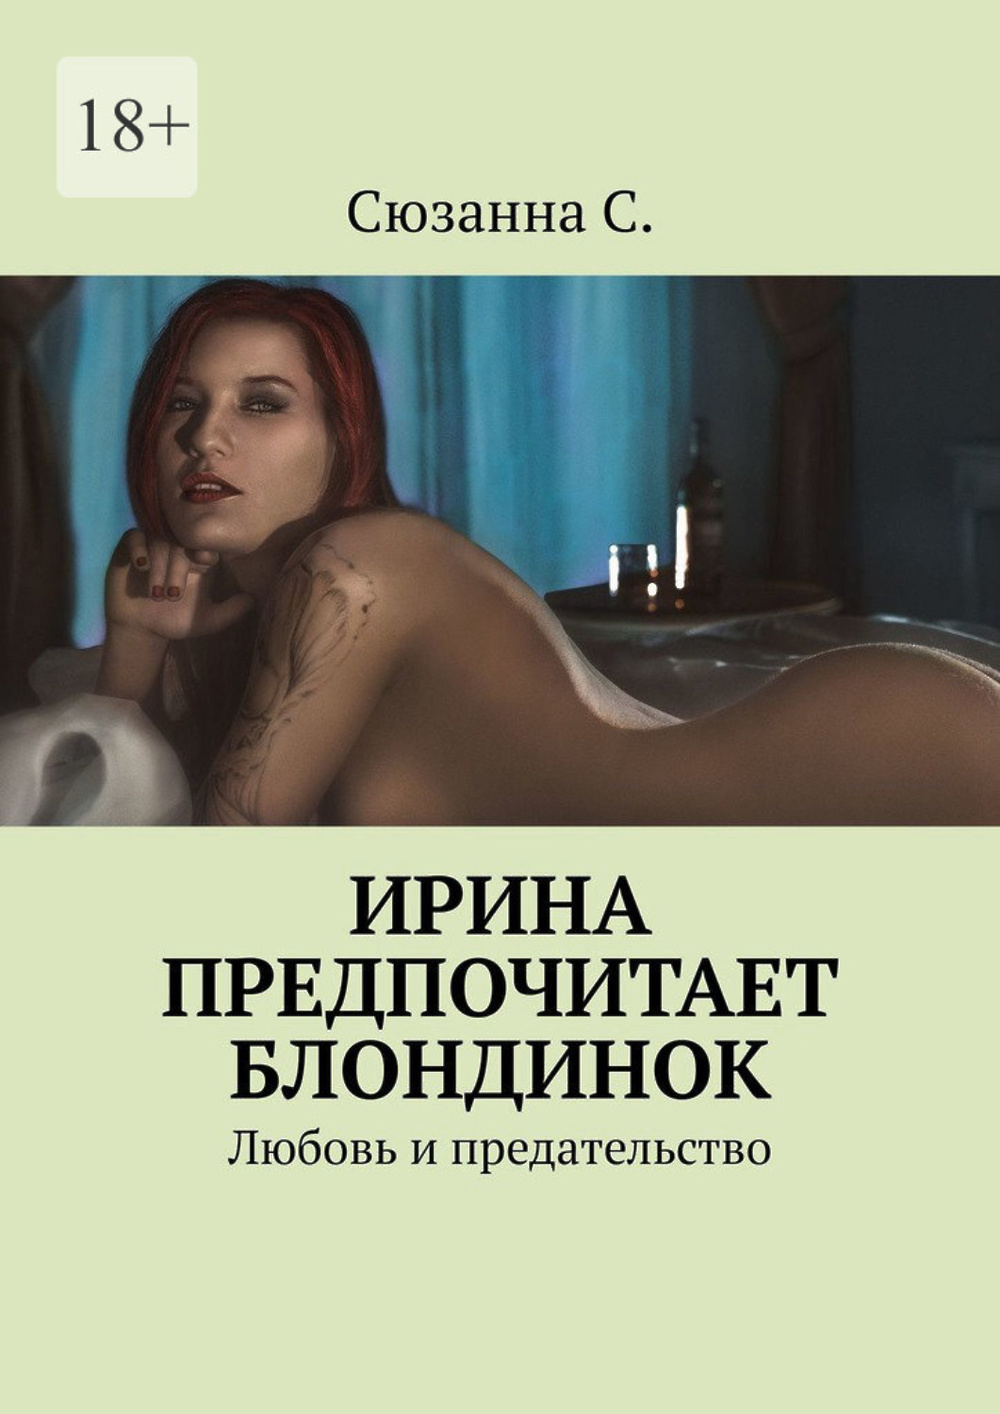 российские писатели эротики фото 51